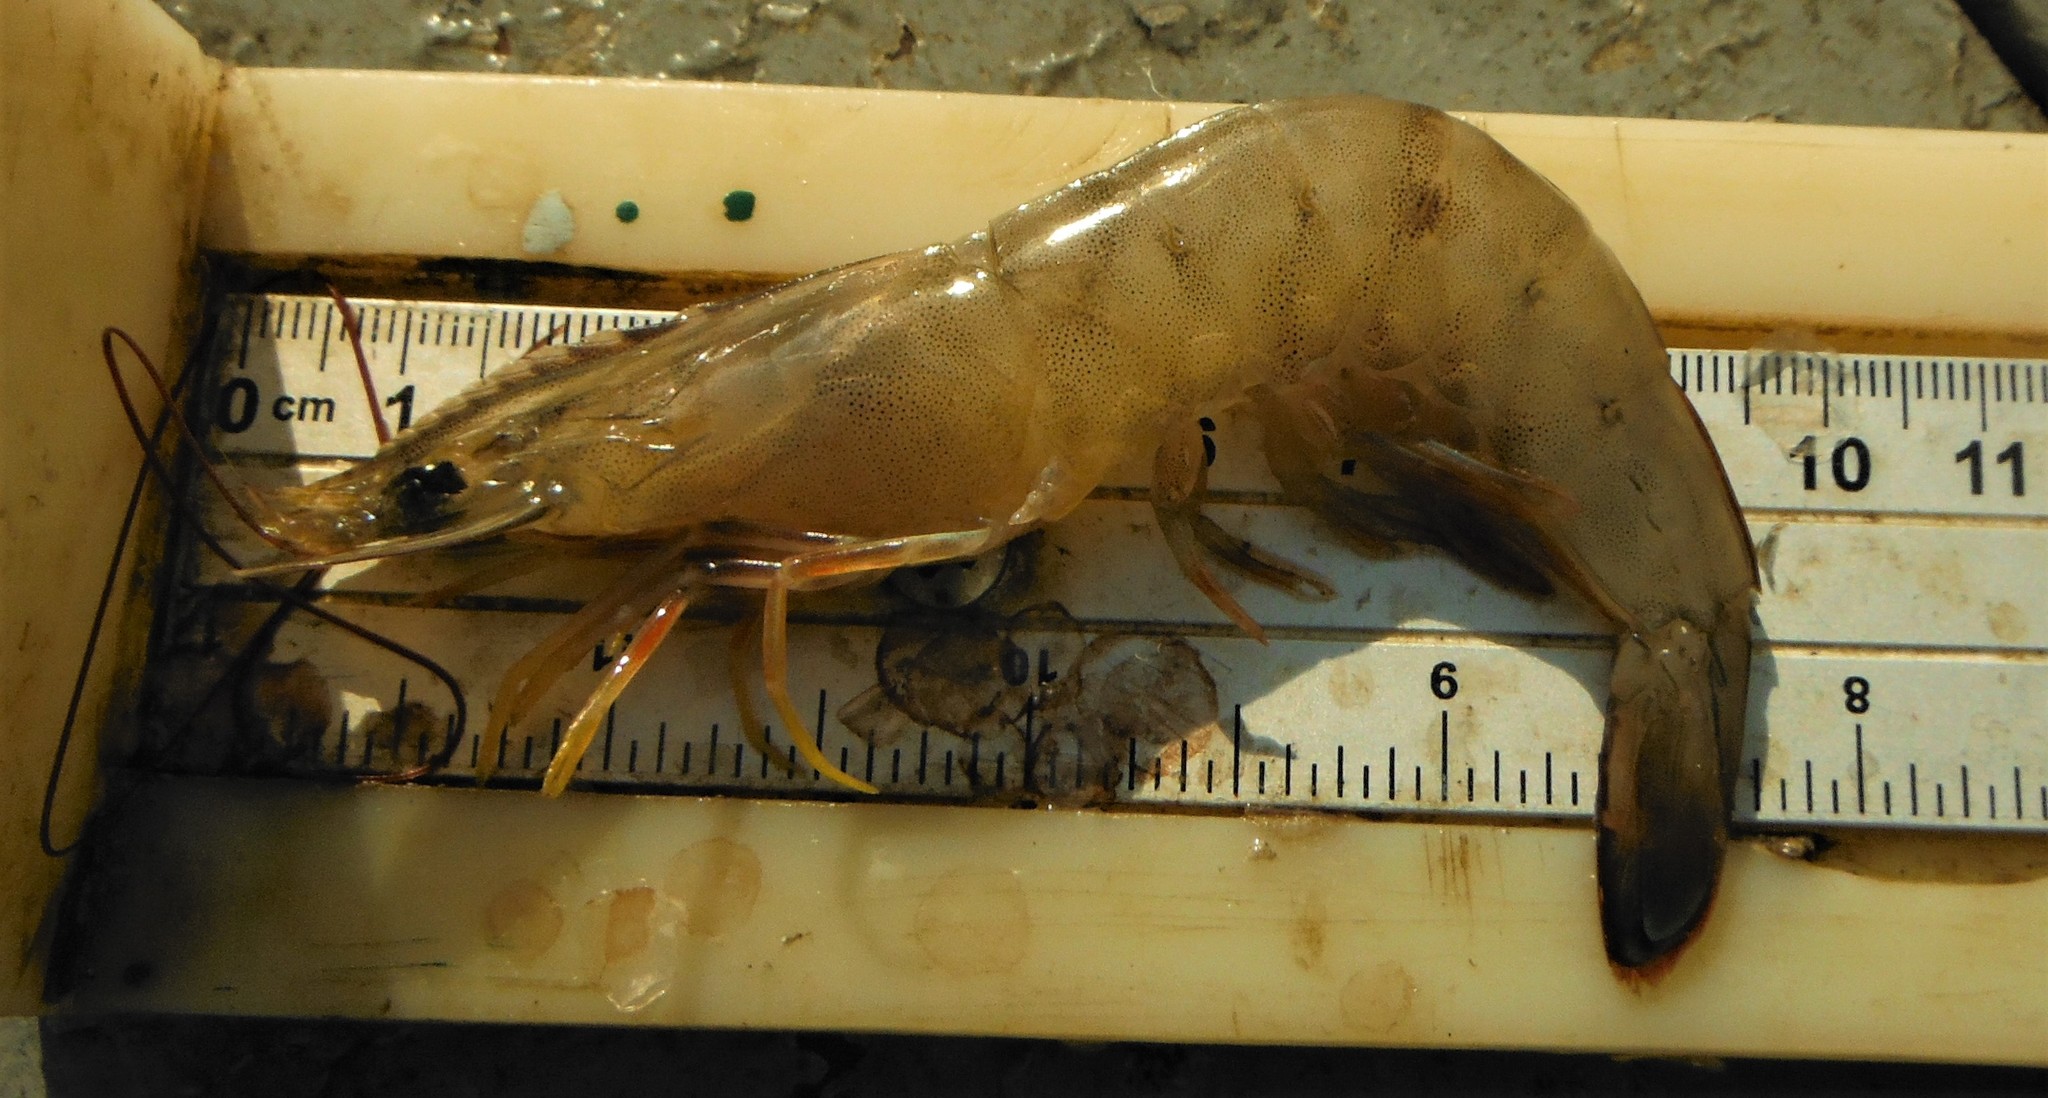 Whiteleg shrimp - Wikipedia